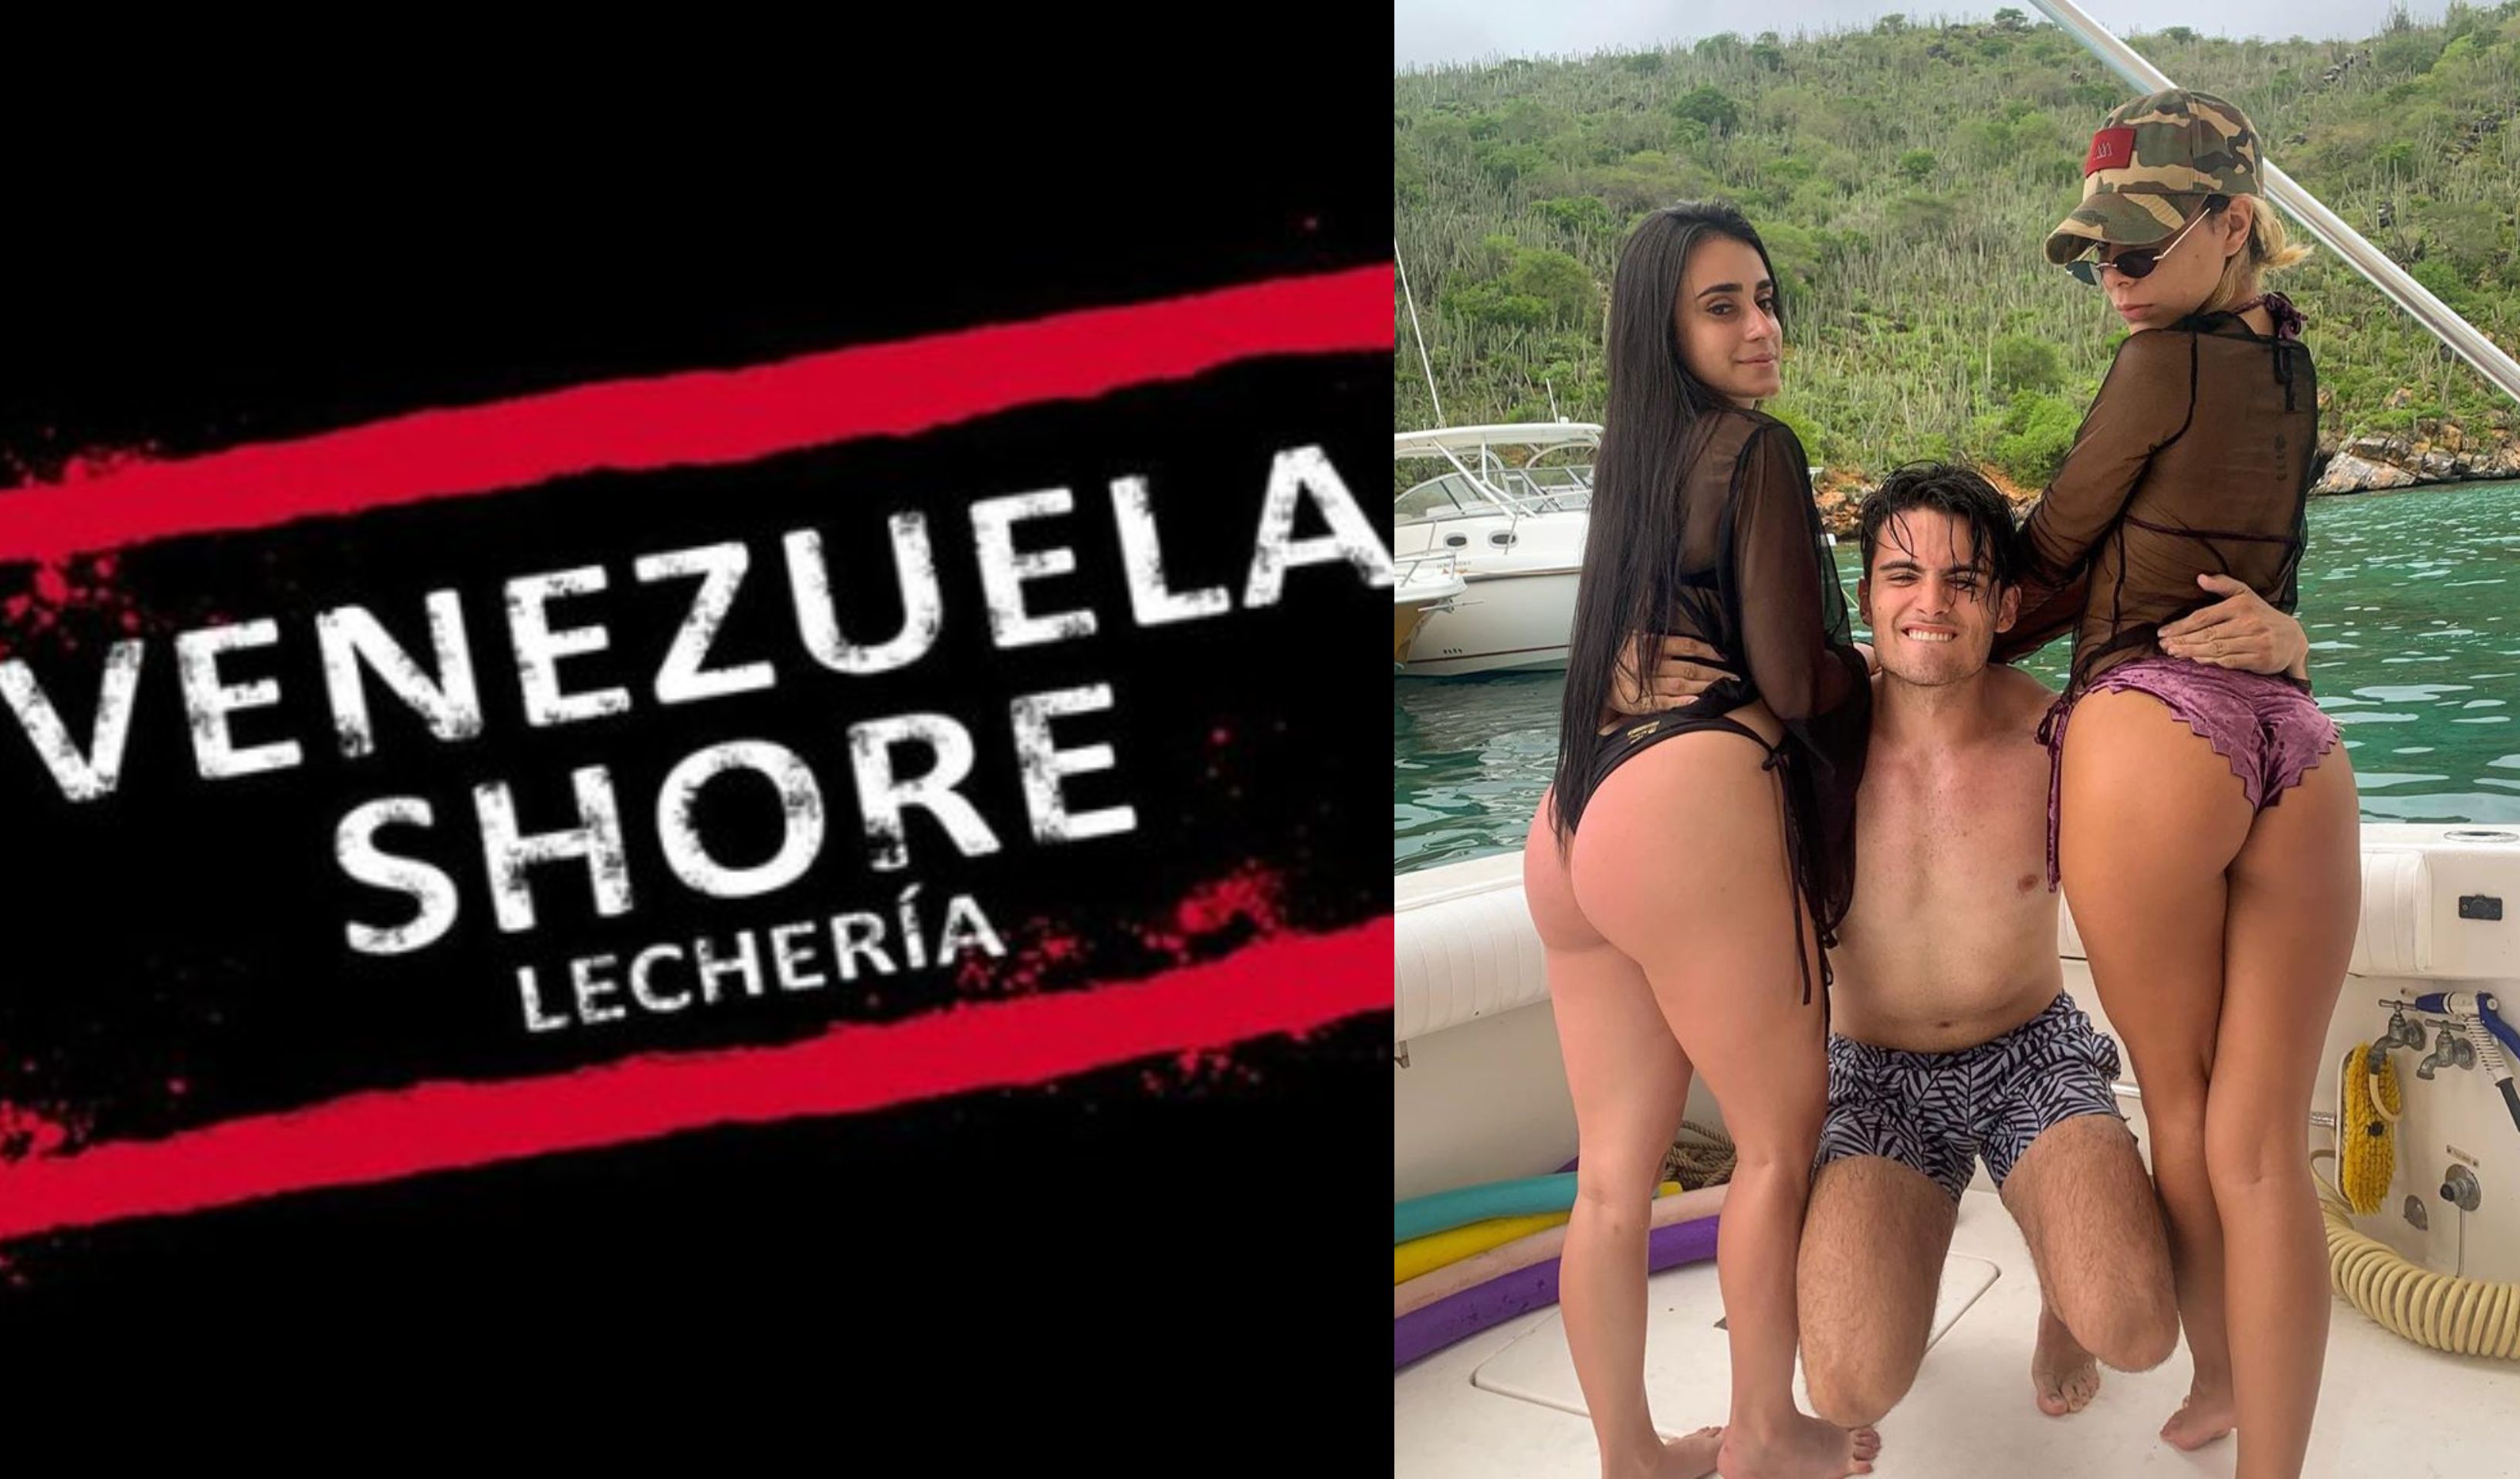 Los elementos ilícitos detrás de Venezuela Shore (+Imágenes)